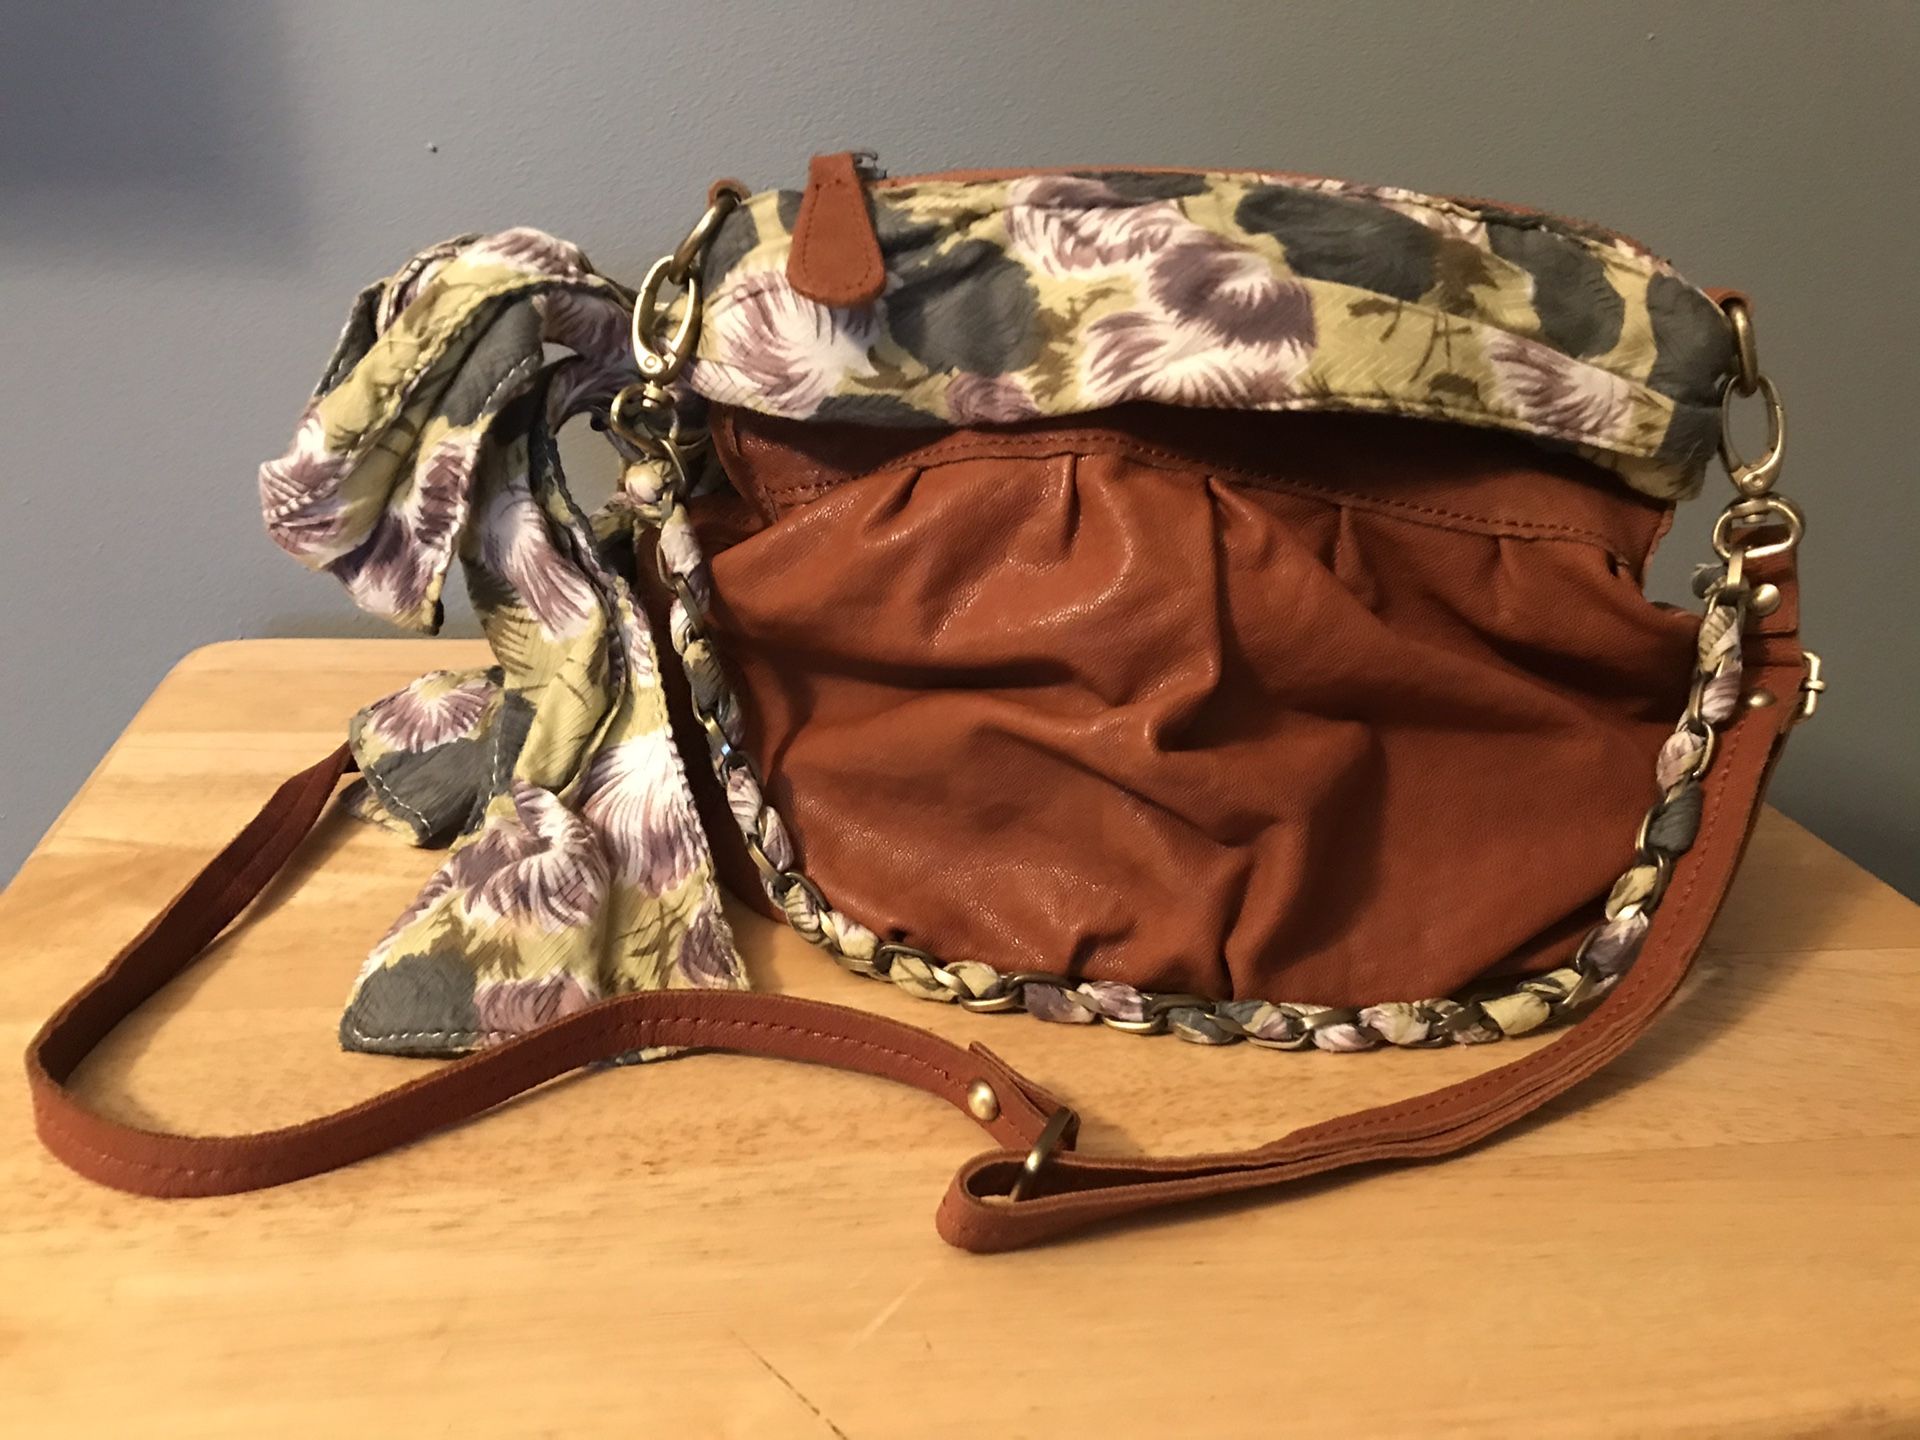 Anthropologie Deux Lux Poised Floral Brown Leather Satchel/Shoulder Bag